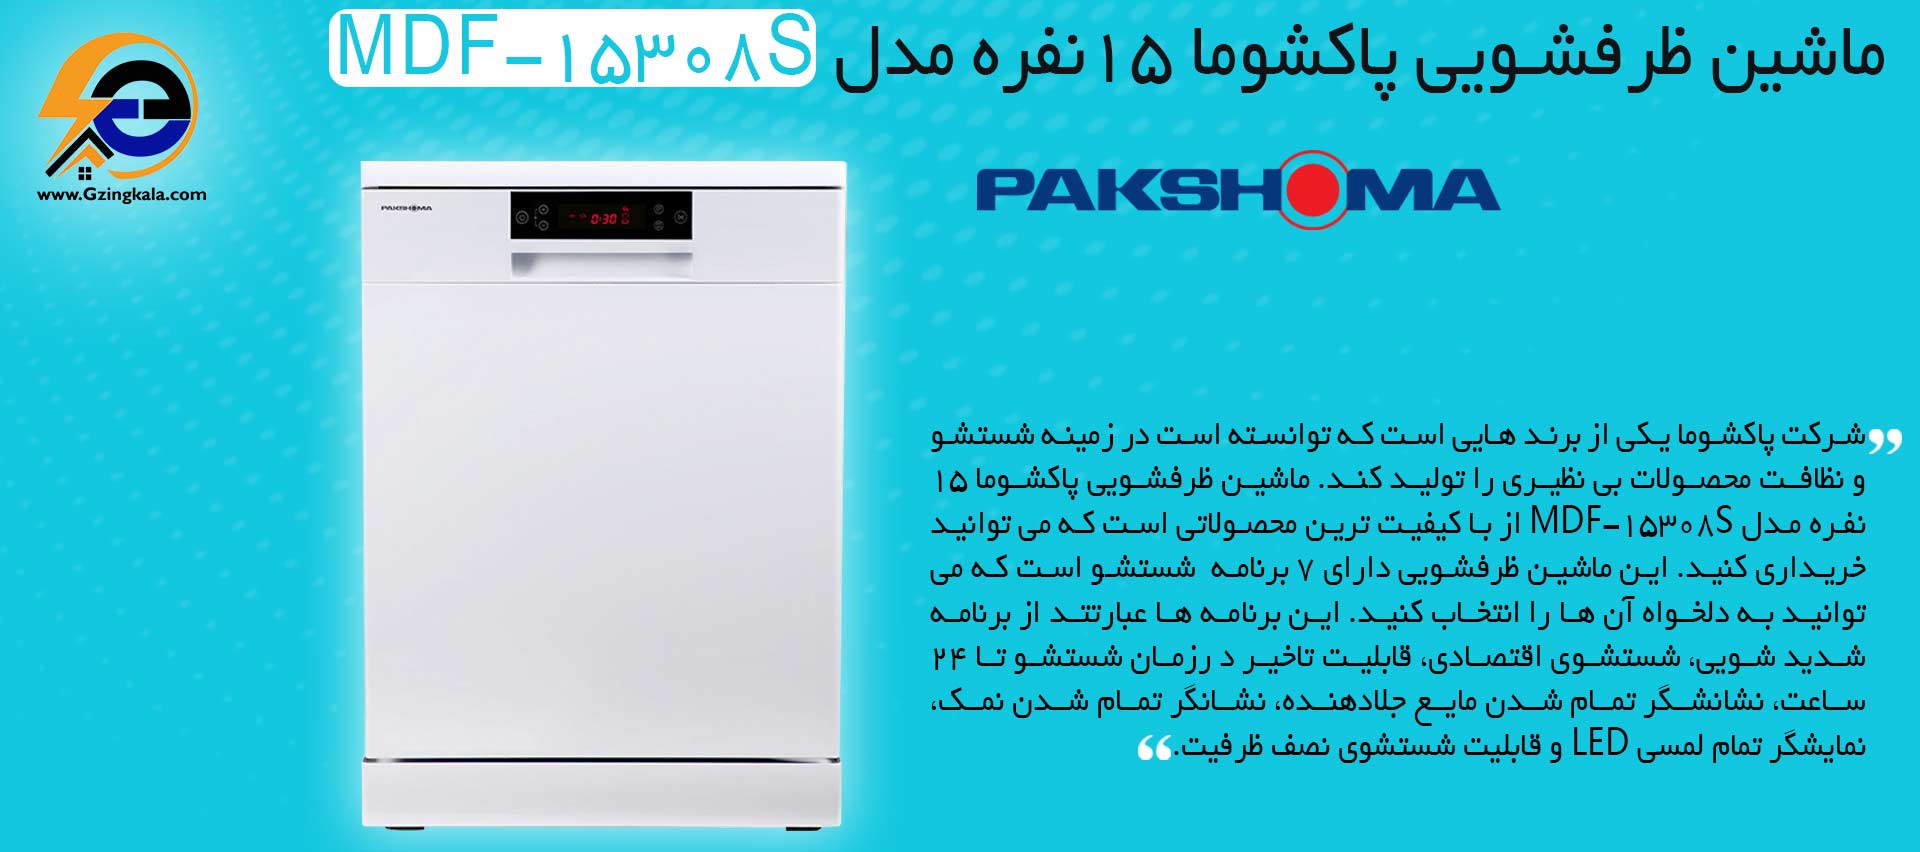 ماشین ظرفشویی پاکشوما 15 نفره مدل MDF-15308S